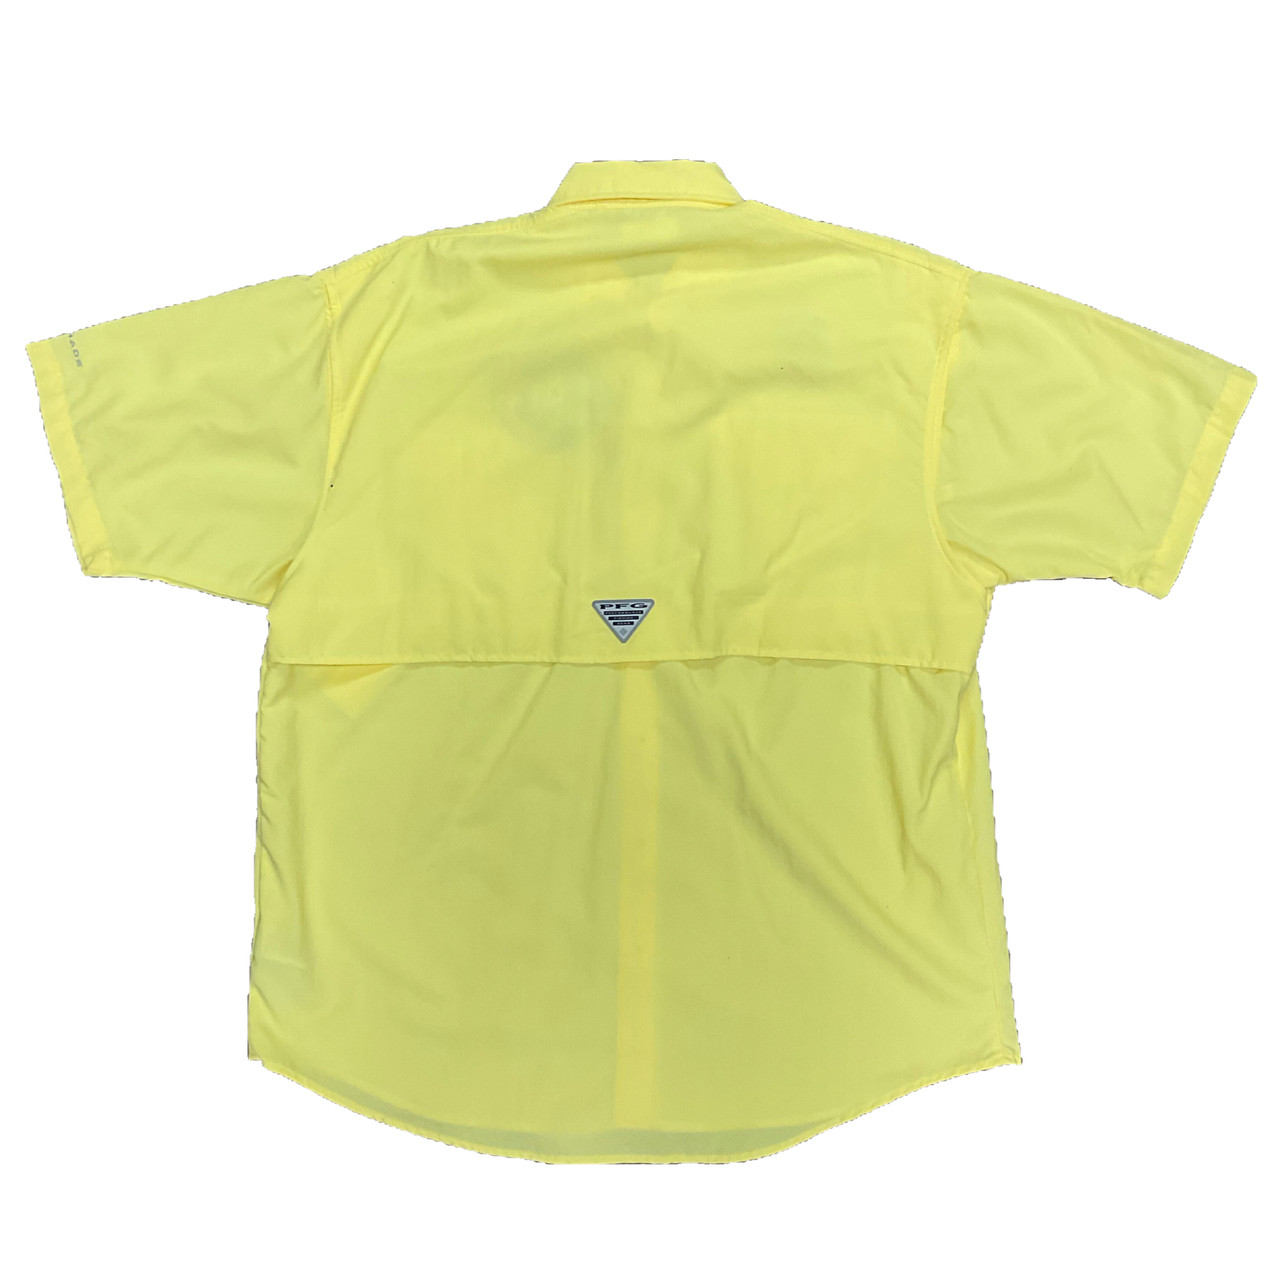 Fishing Shirt SS 707 Columbia Sports Wear Yellow